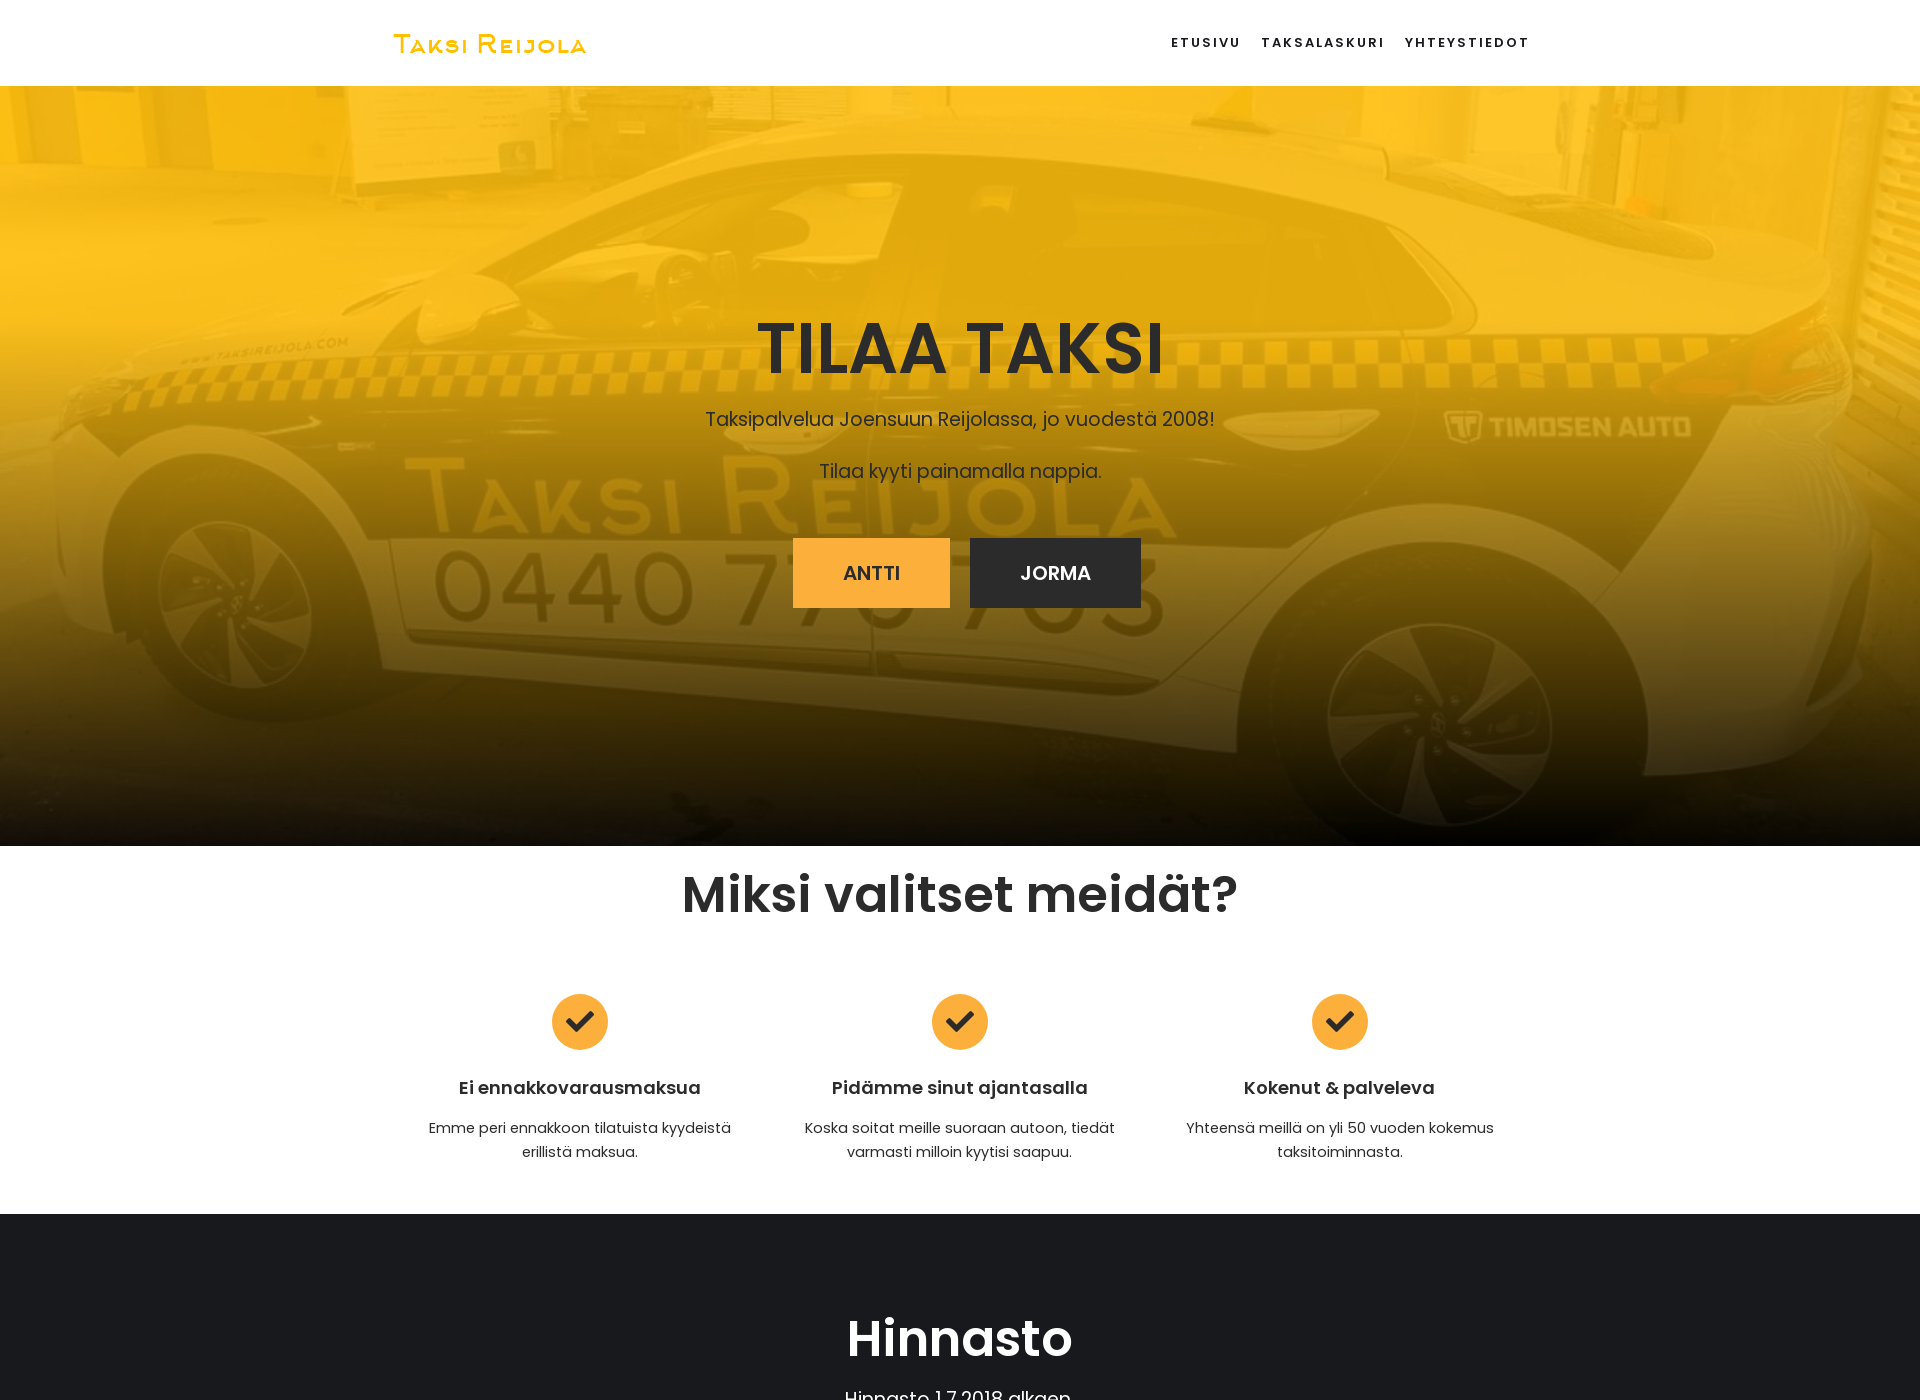 Näyttökuva taksireijola.fi